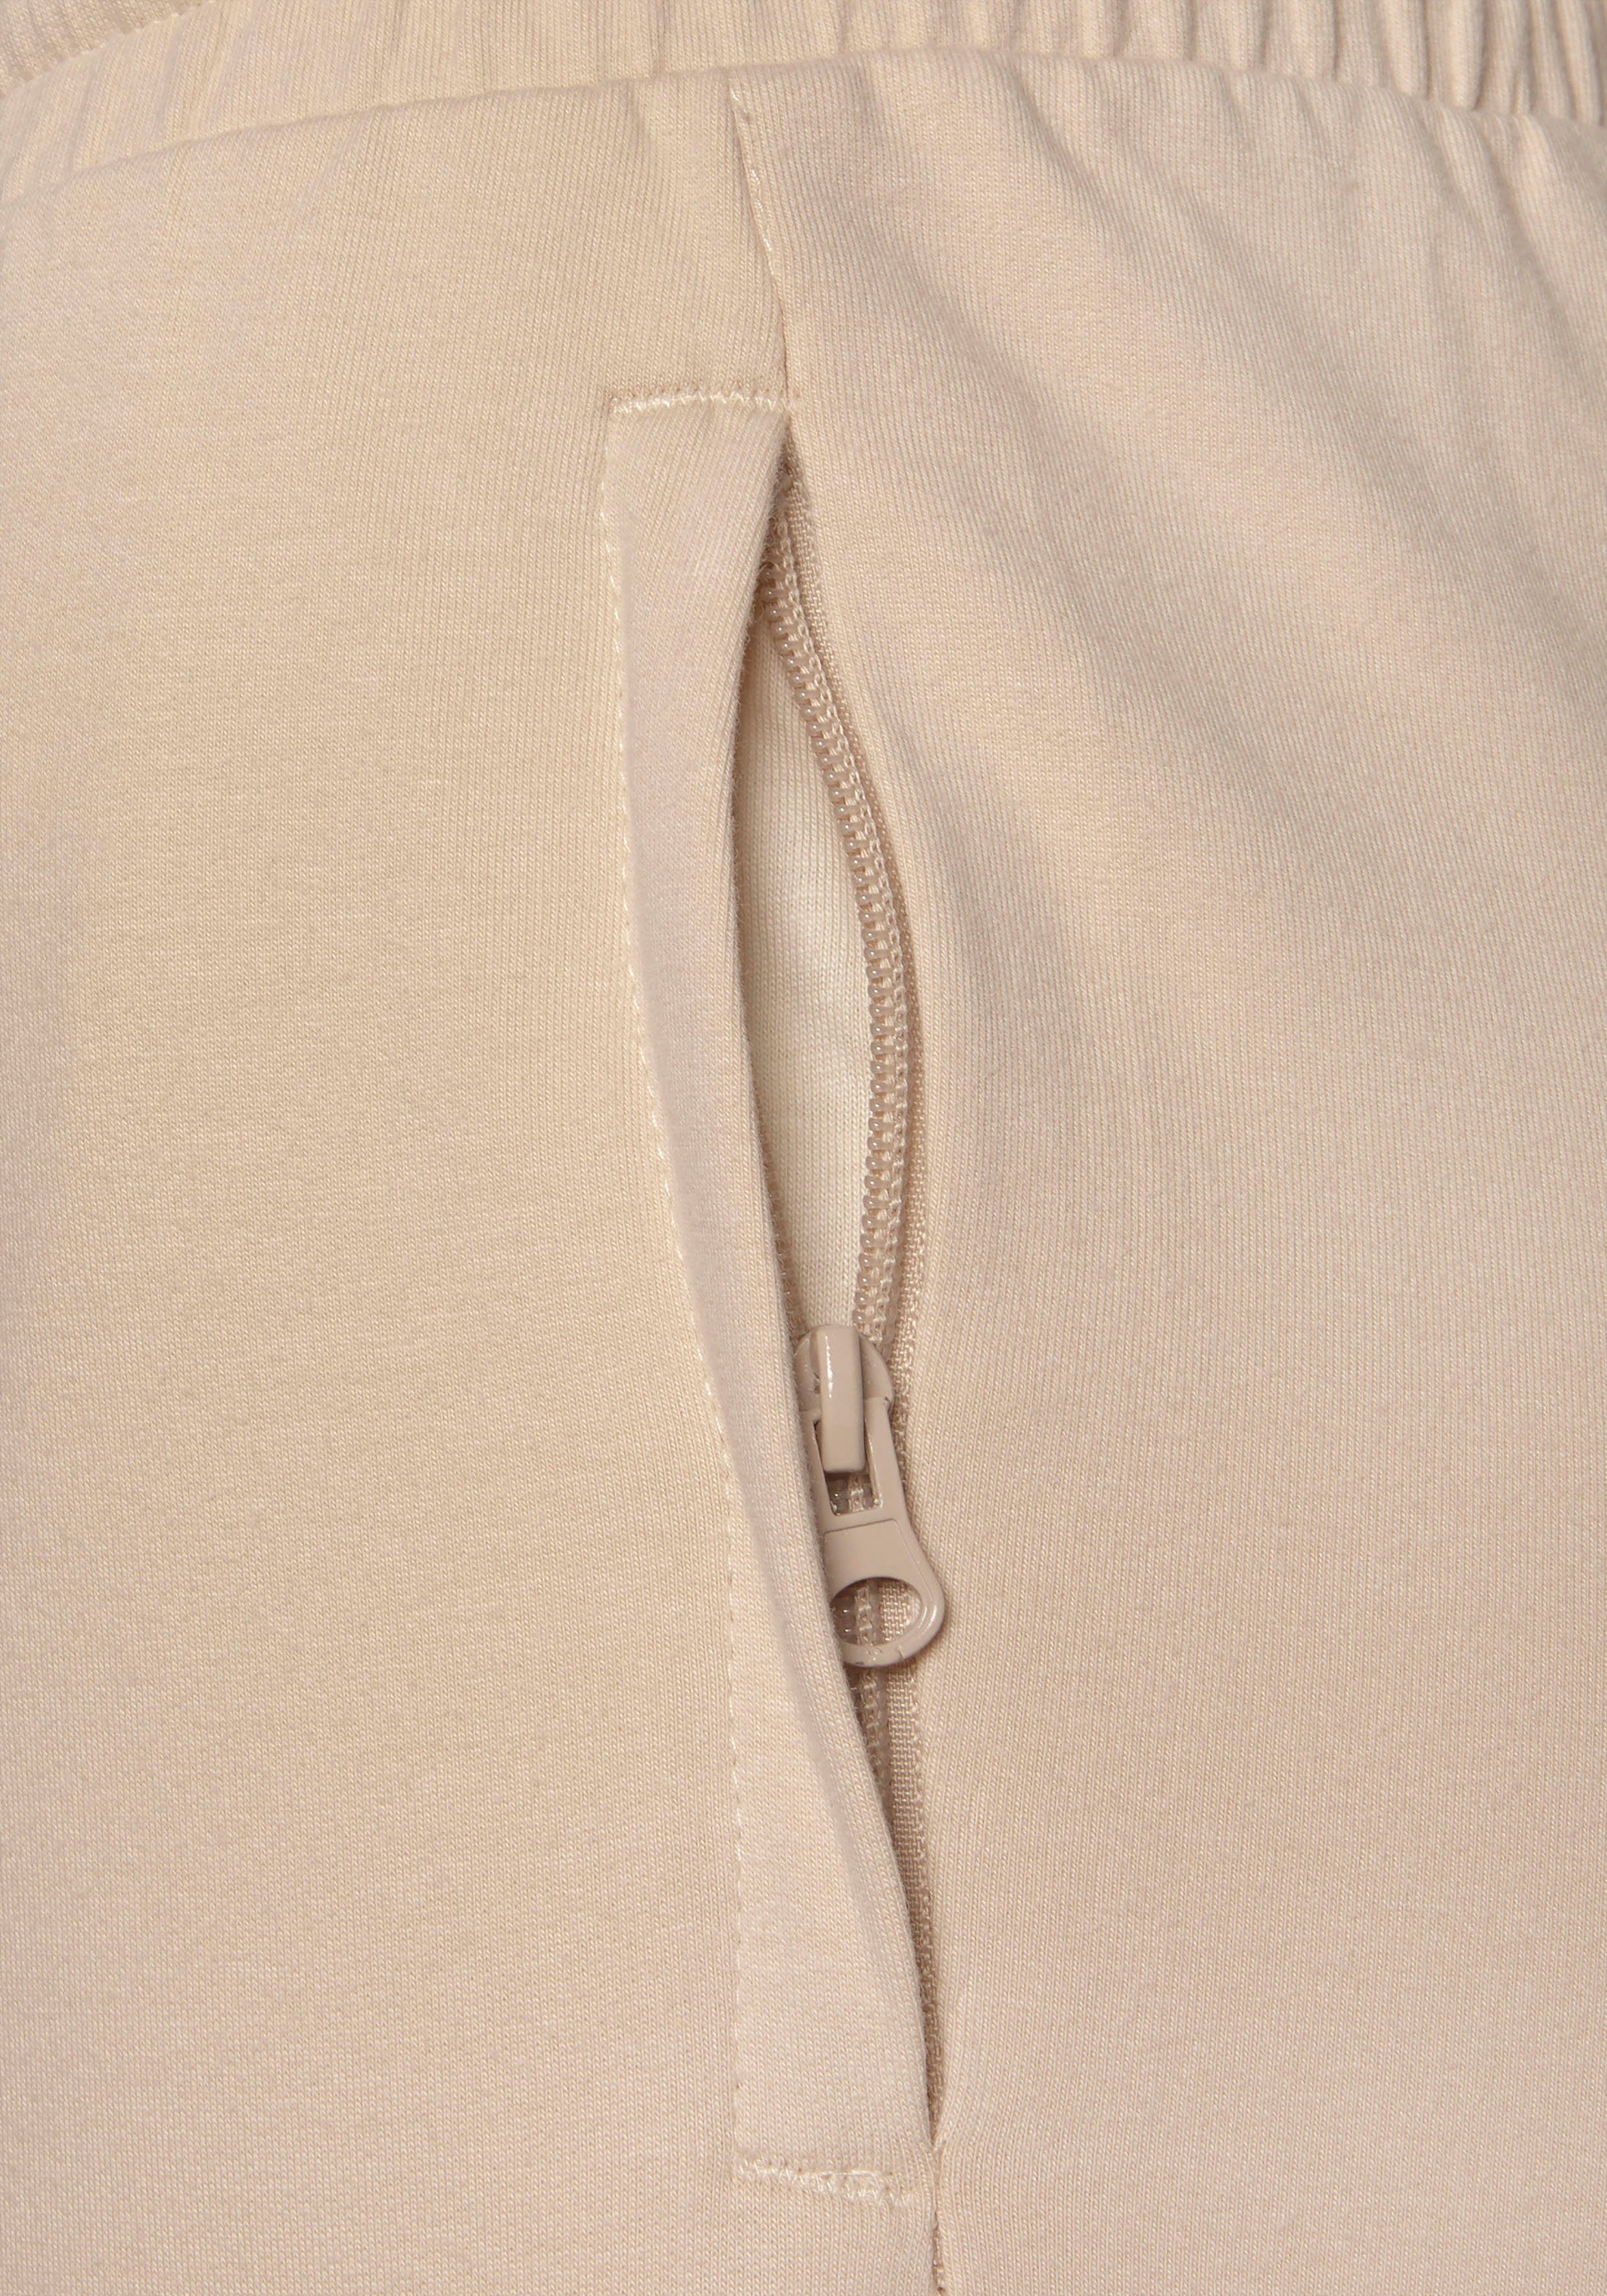 Reißverschluss beige Homewearhose Taschen, Loungeanzug Loungewear Bench. mit